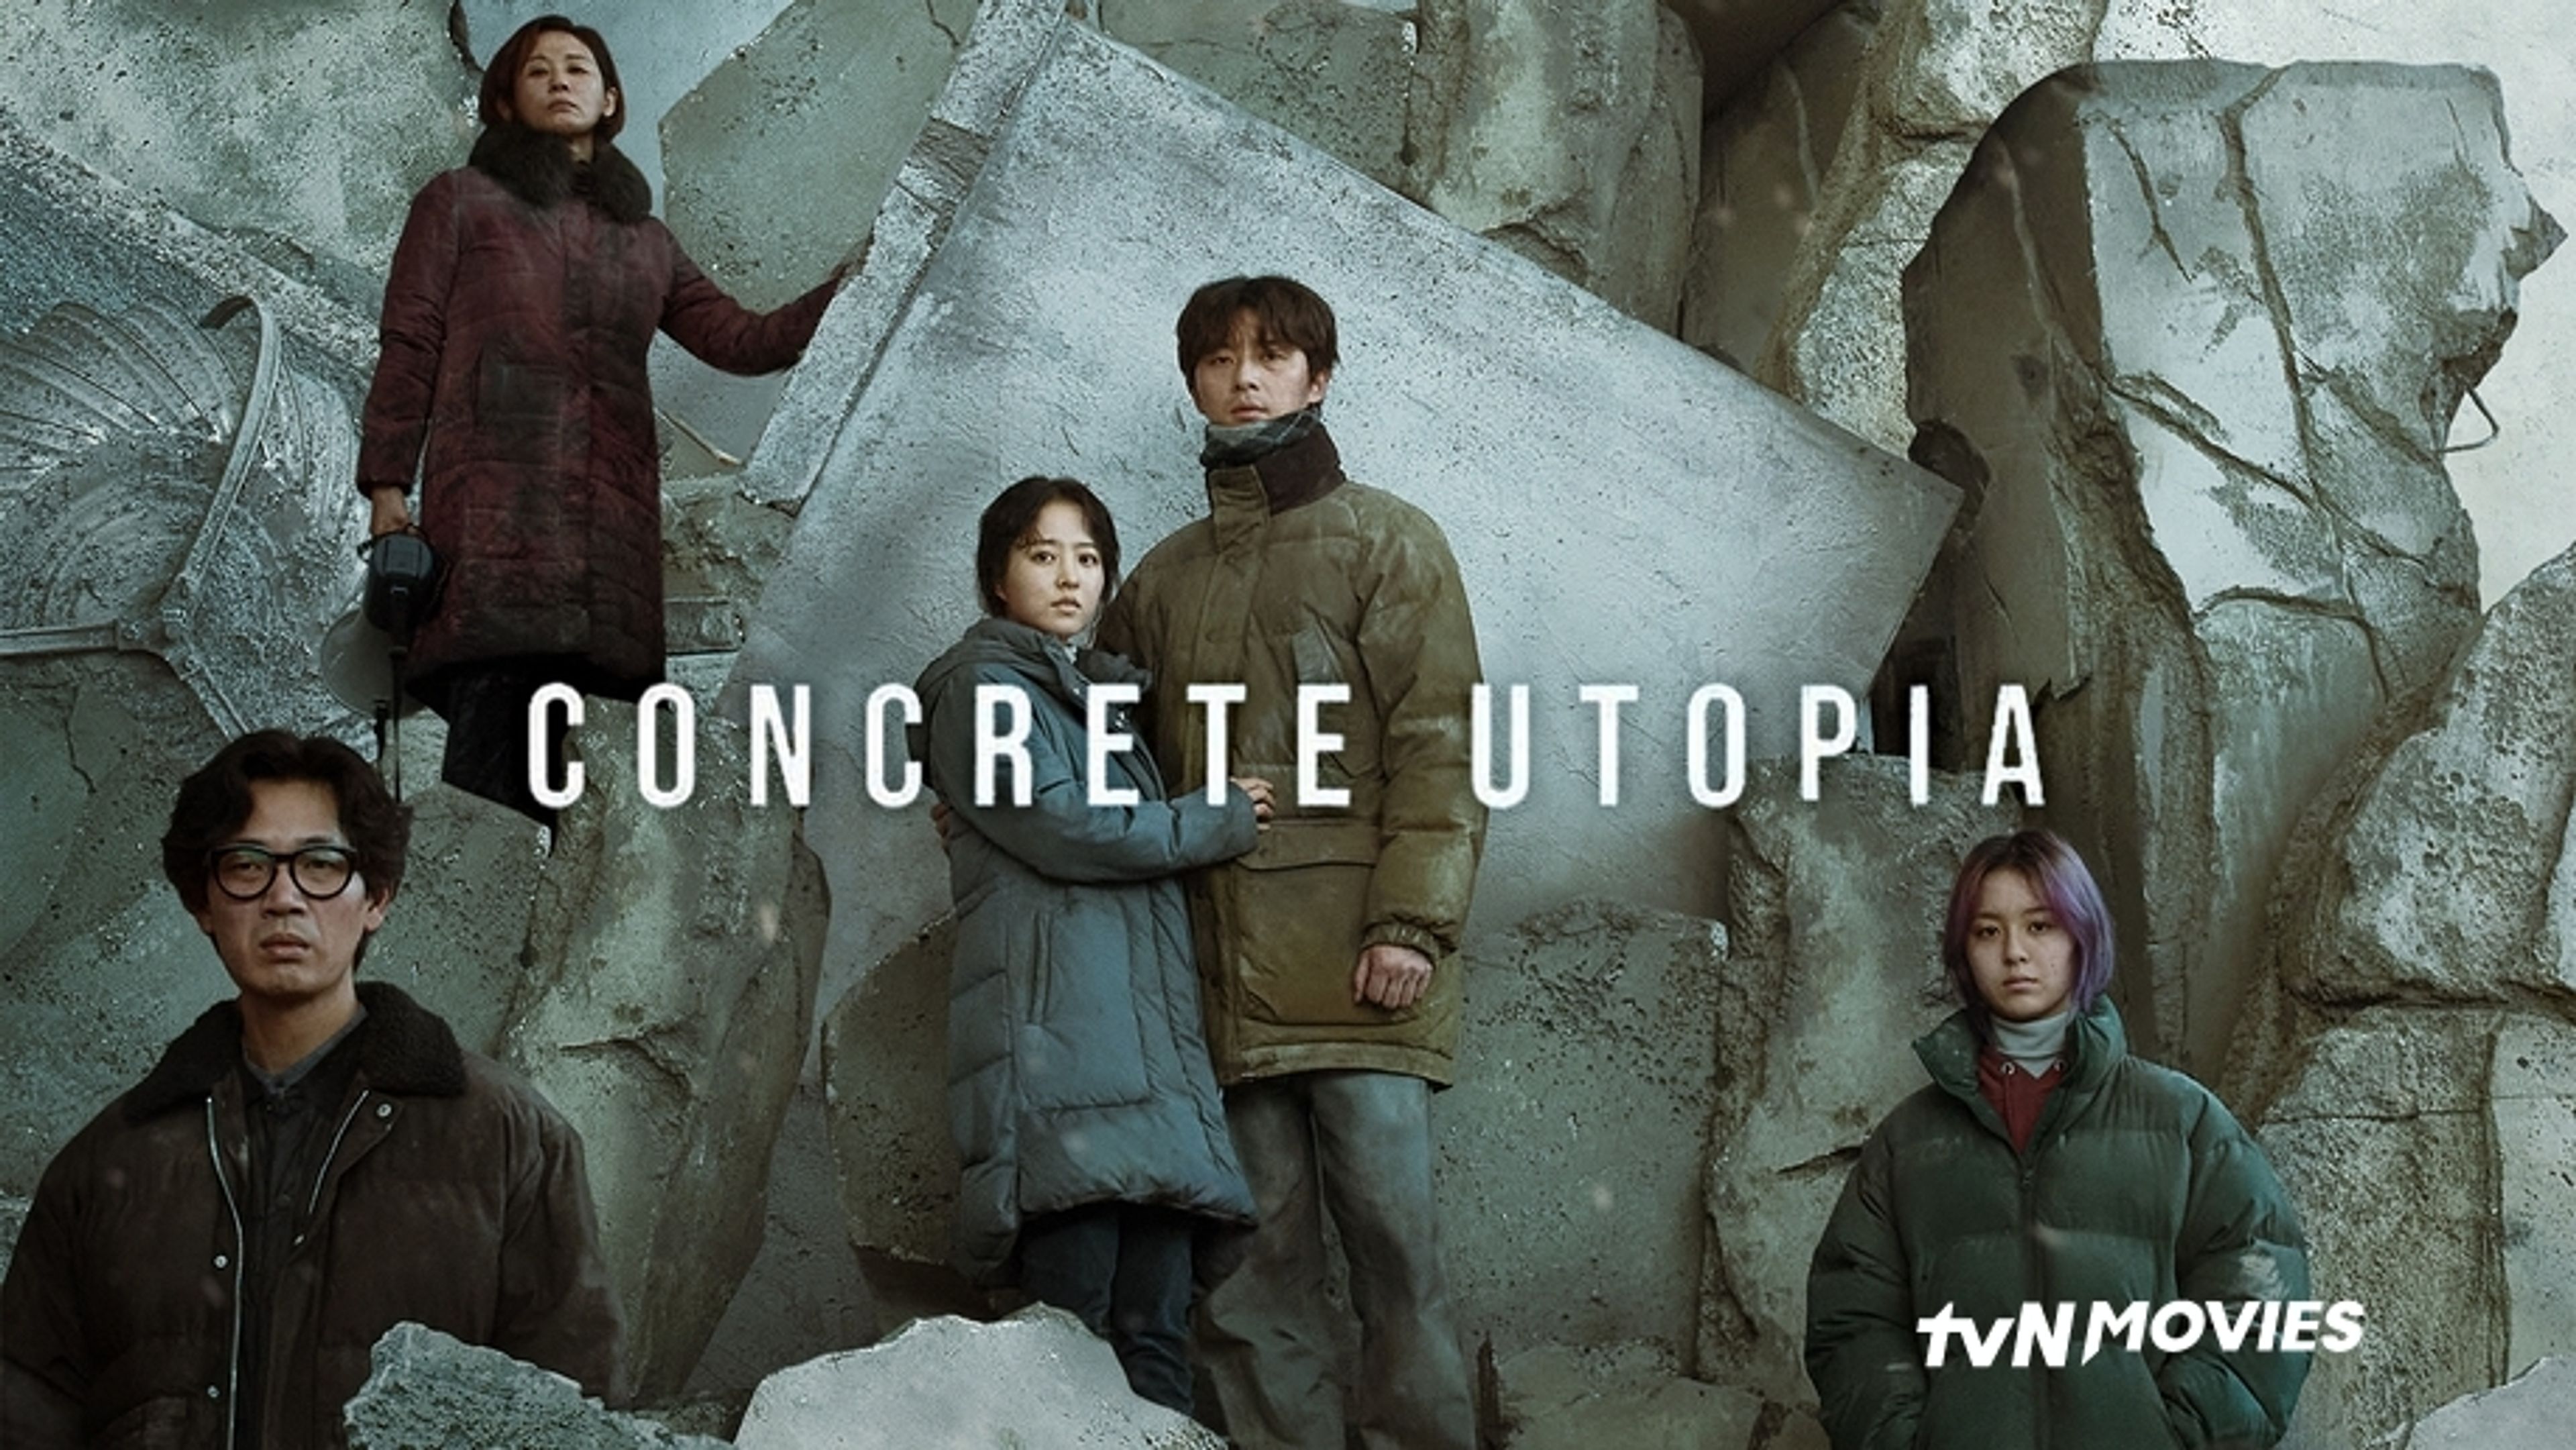 Concrete Utopia